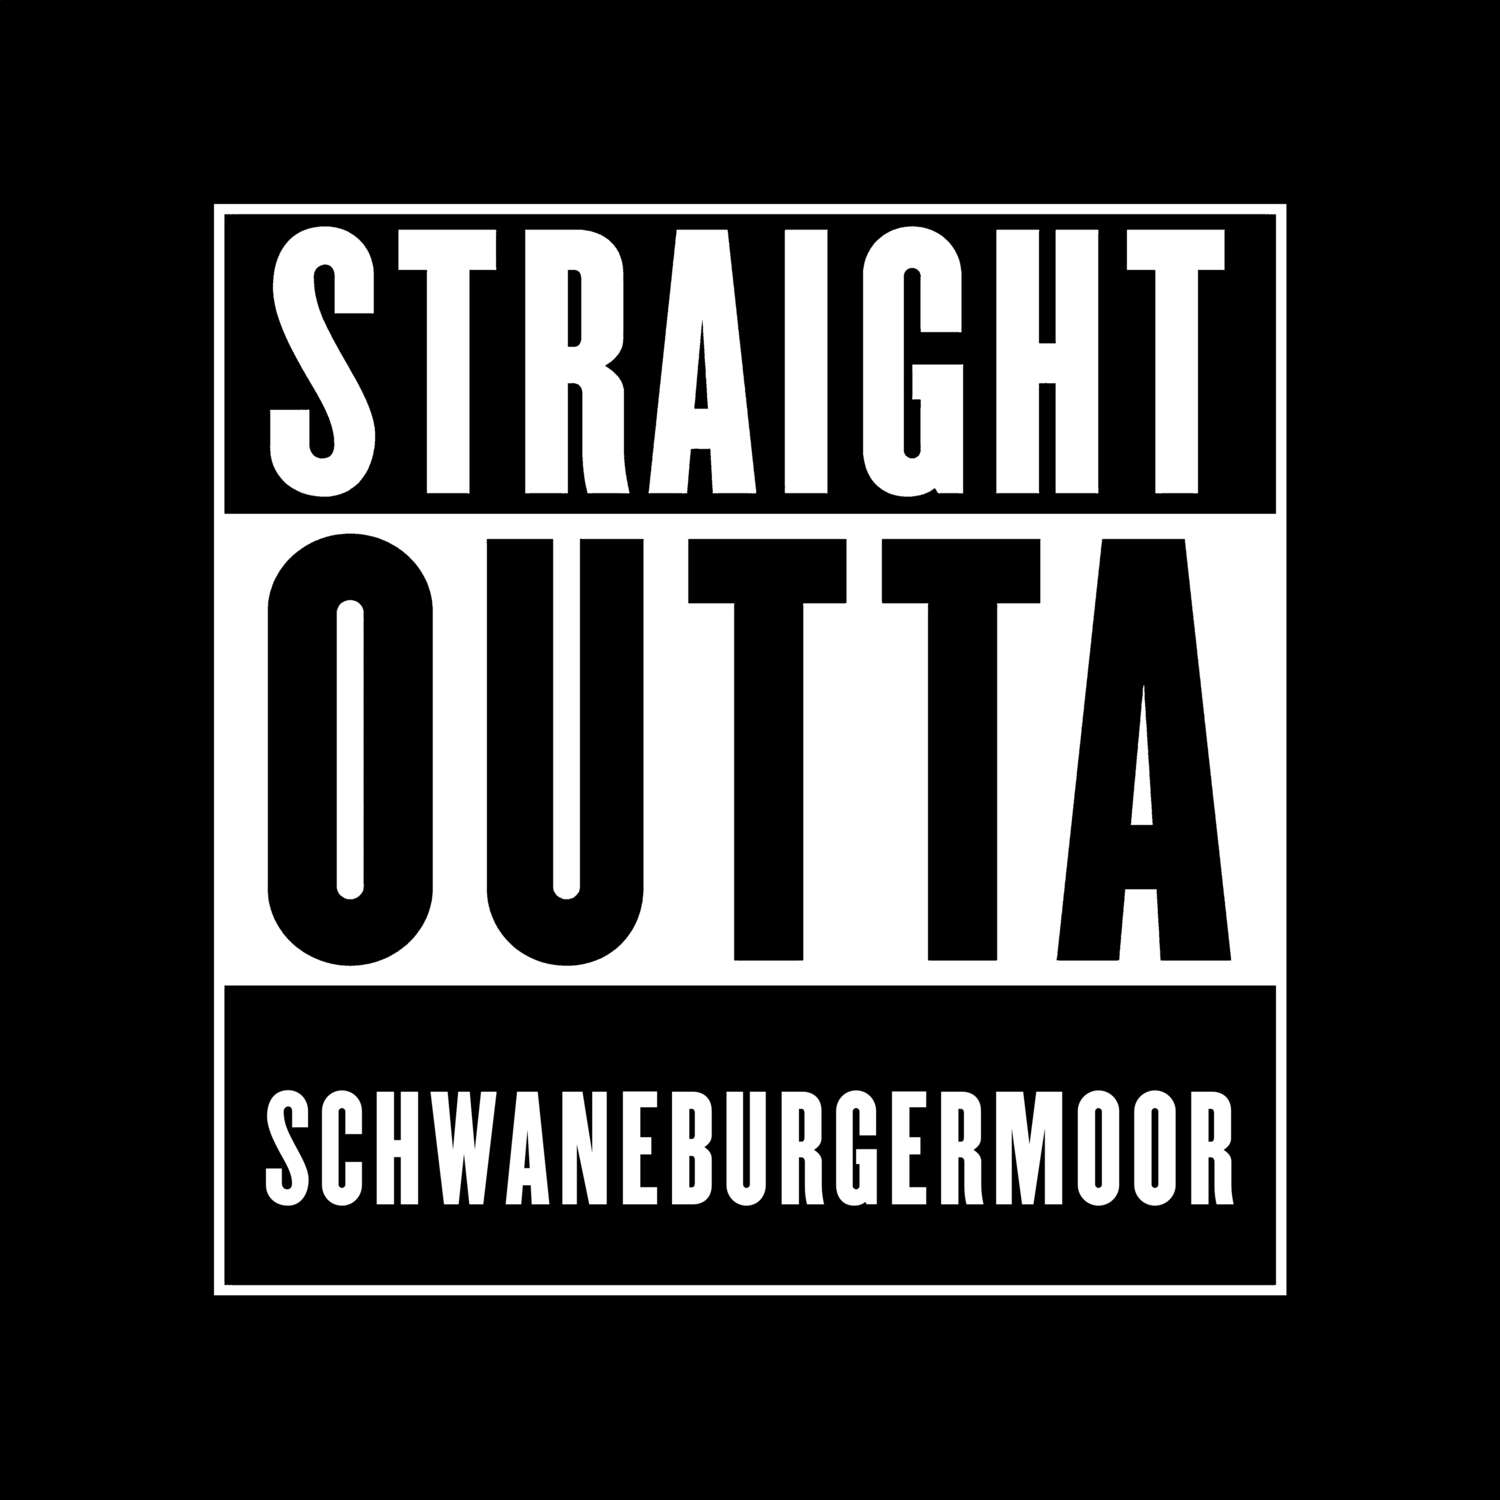 Schwaneburgermoor T-Shirt »Straight Outta«